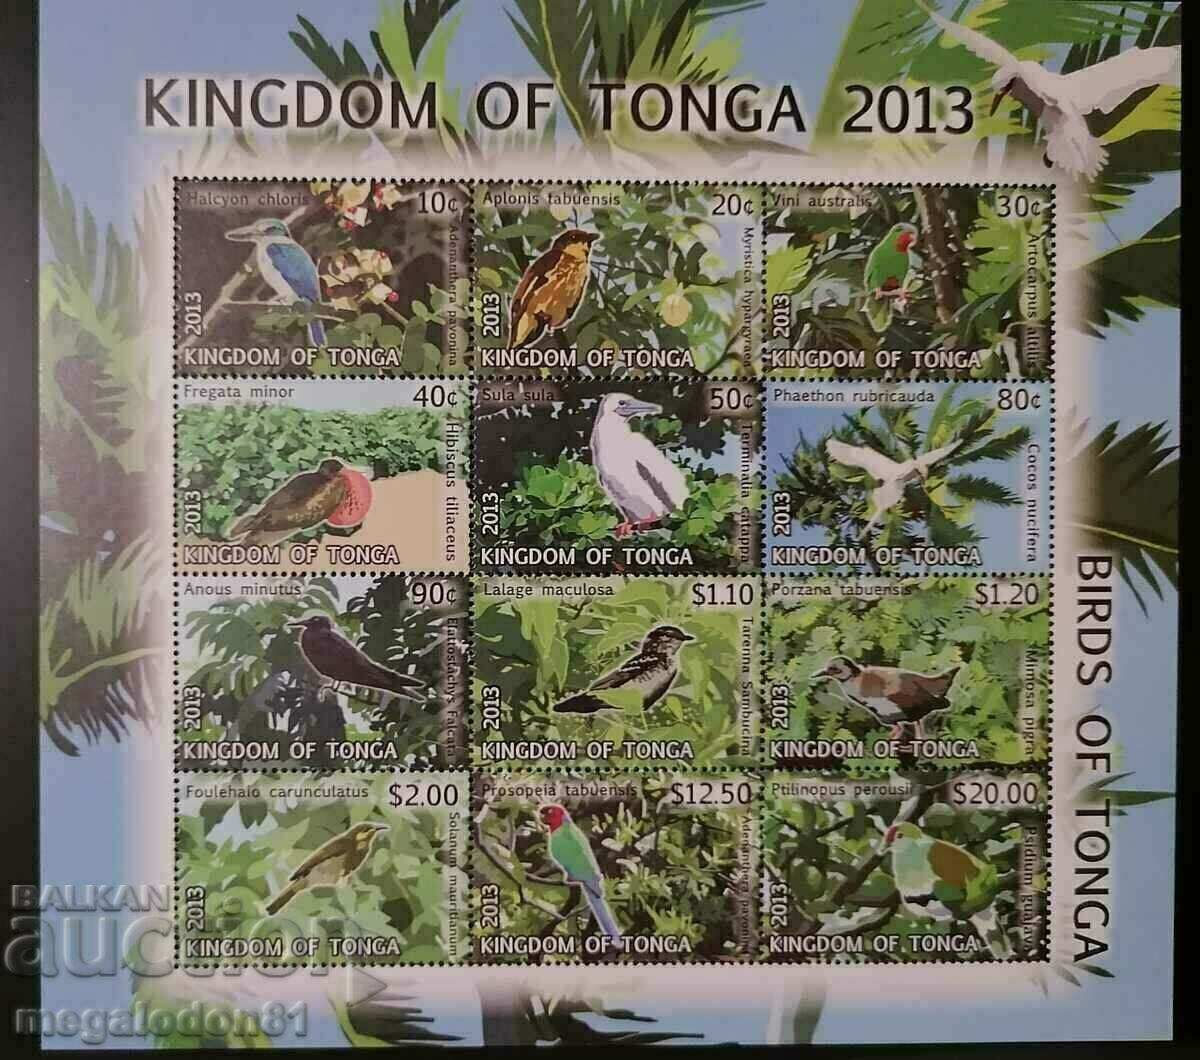 Τόνγκα - πανίδα, πουλιά